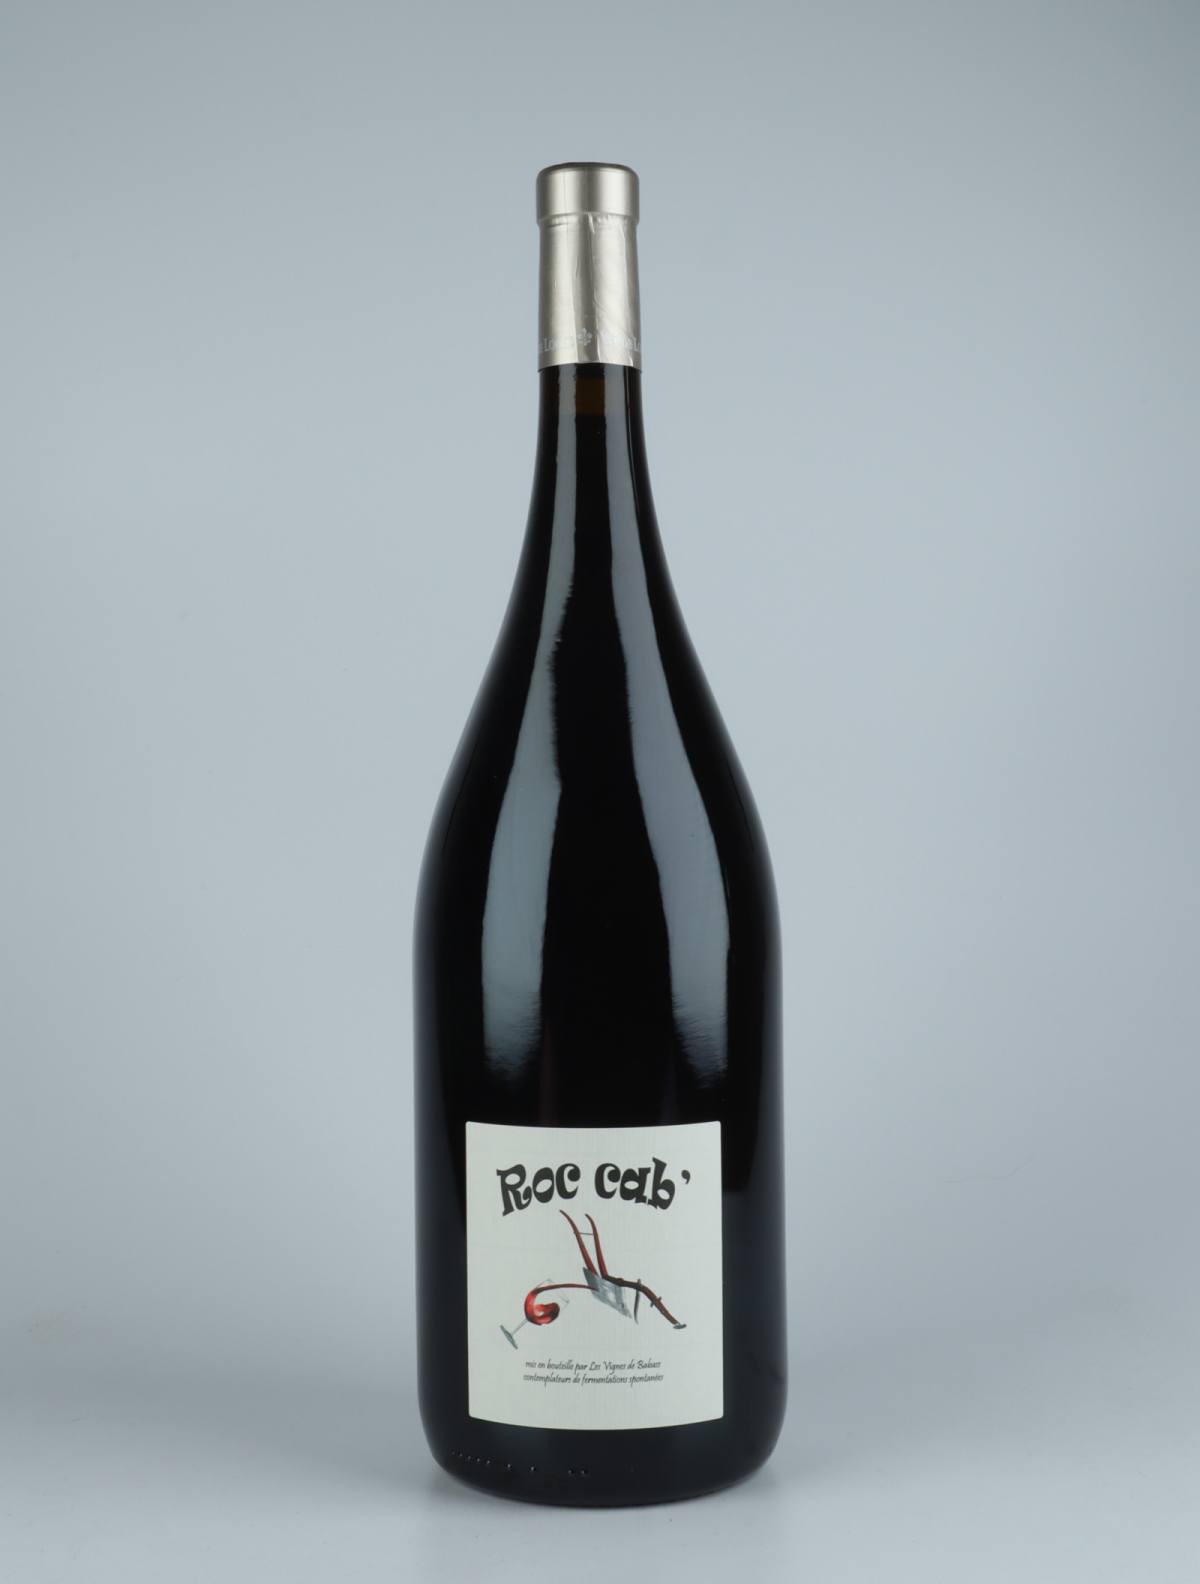 En flaske 2020 Roc Cab Rødvin fra Les Vignes de Babass, Loire i Frankrig